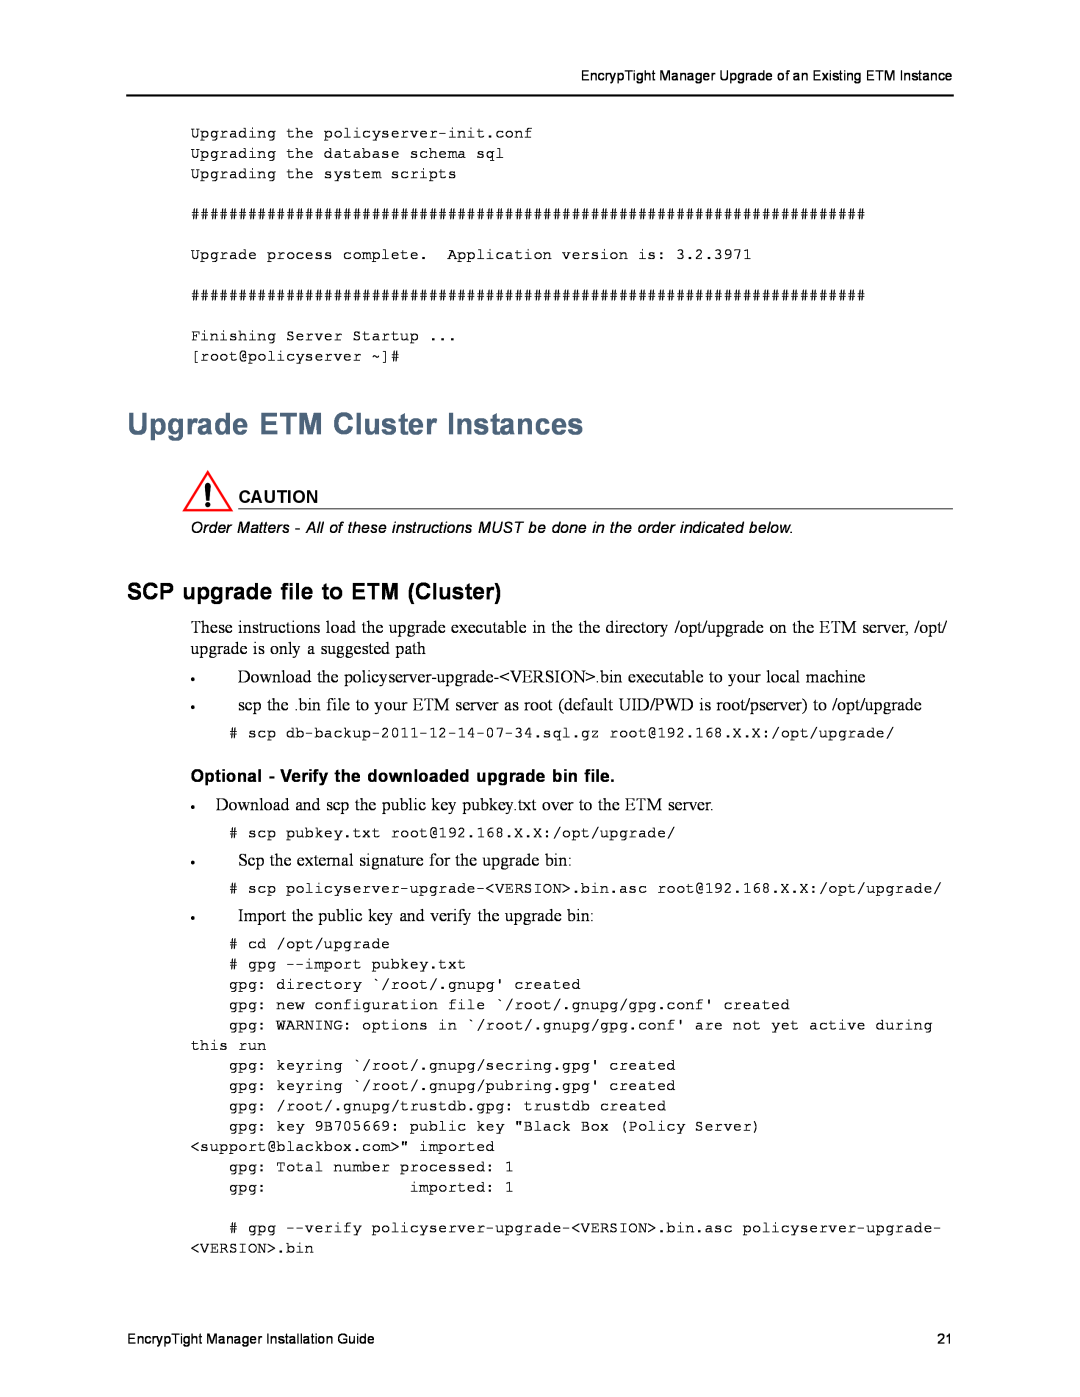 Black Box ET0010A, ET1000A, ET0100A, ET10000A, The EncrypTight Upgrade ETM Cluster Instances, SCP upgrade file to ETM Cluster 